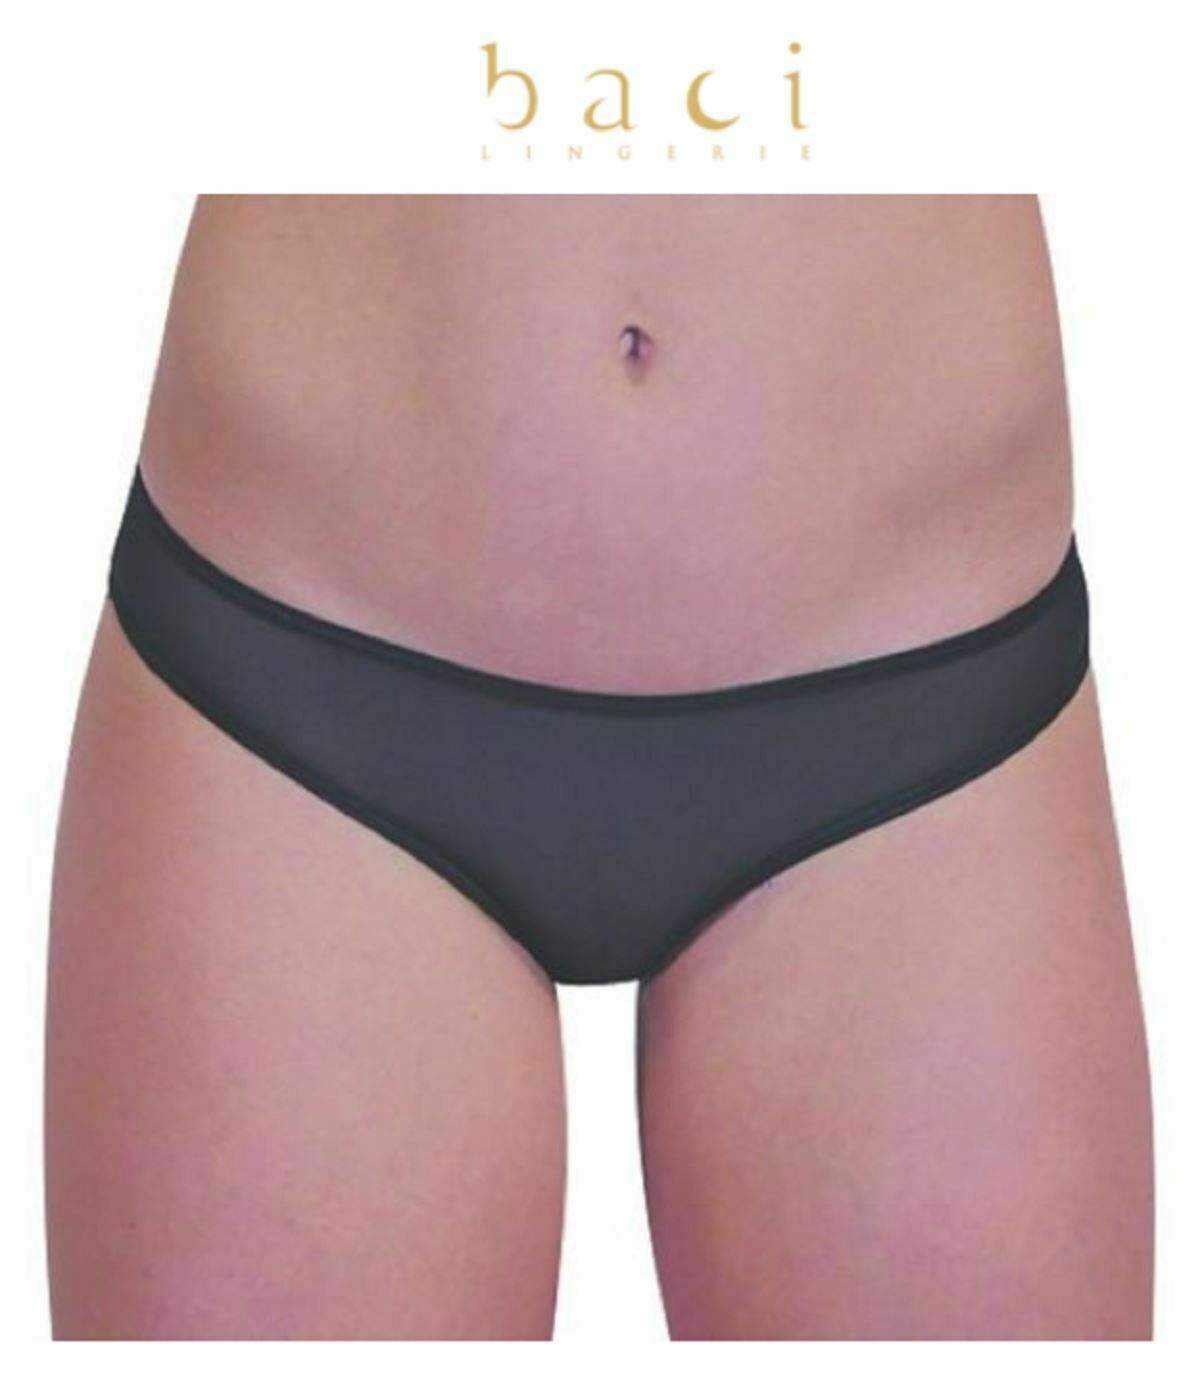 Baci Damen-Dessous, sexy Höschen, transparente kurze Unterwäsche, 4003, Einheitsgröße SML 